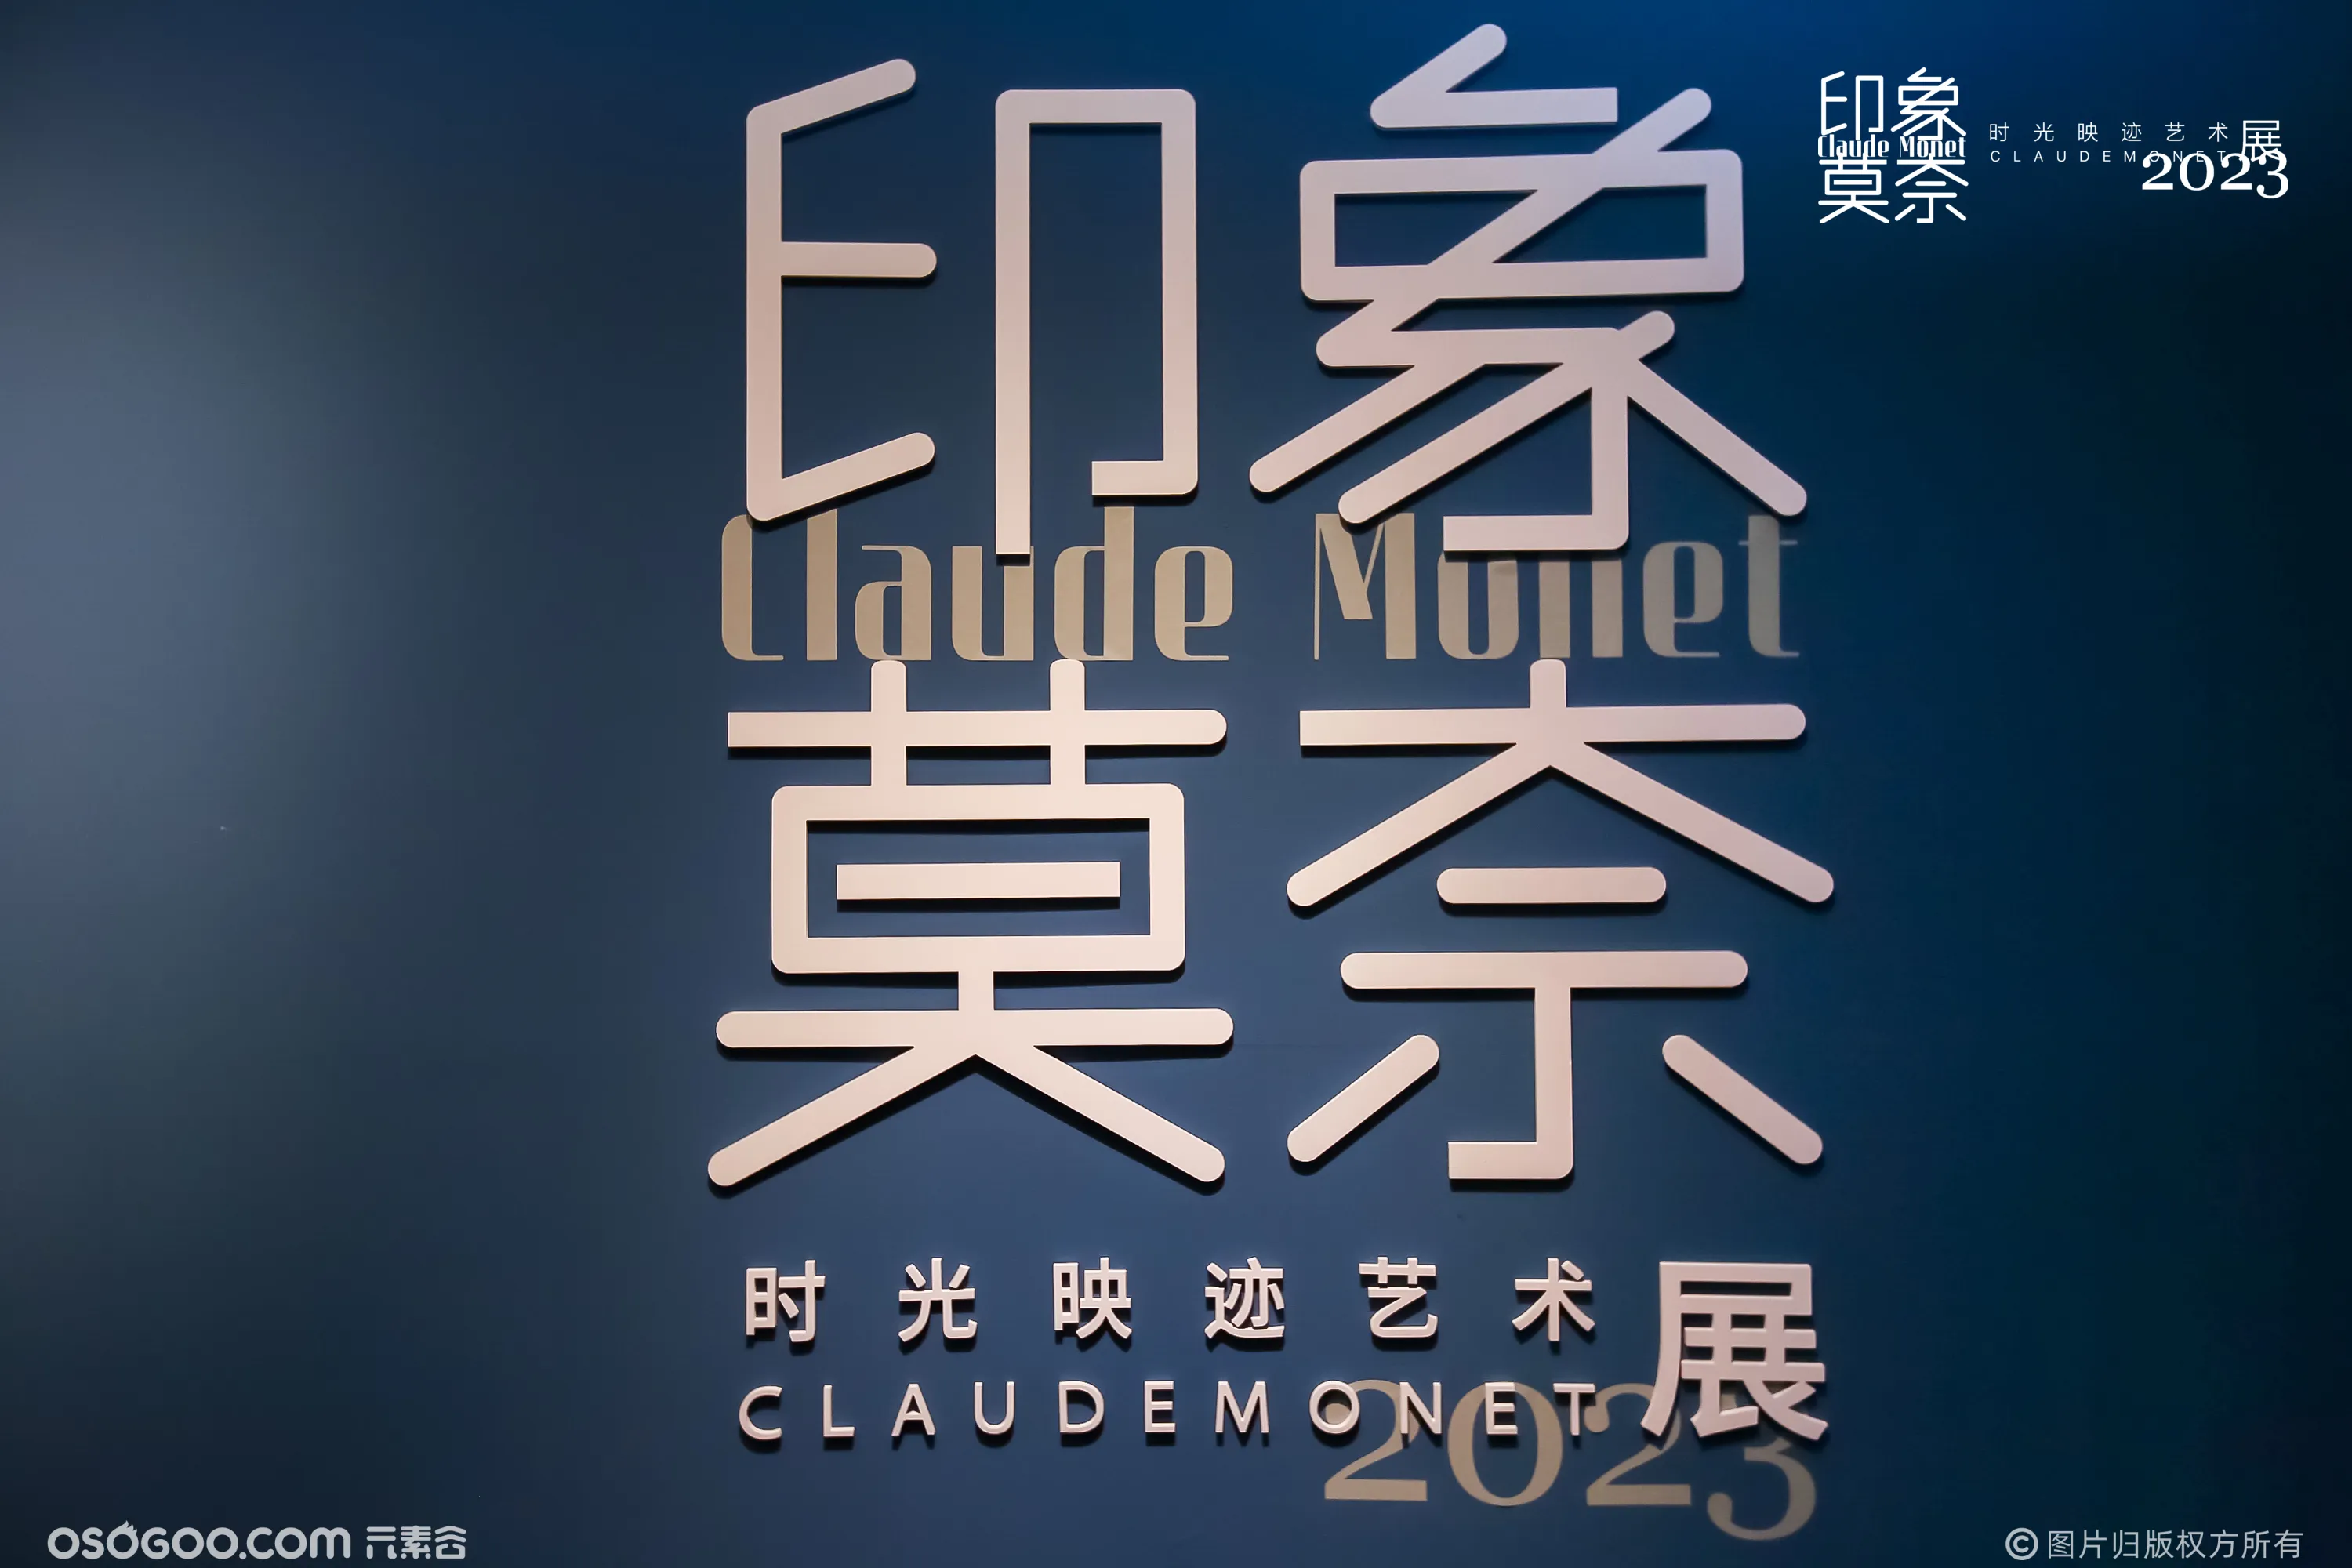 时光映迹艺术展2023 Claude Monet